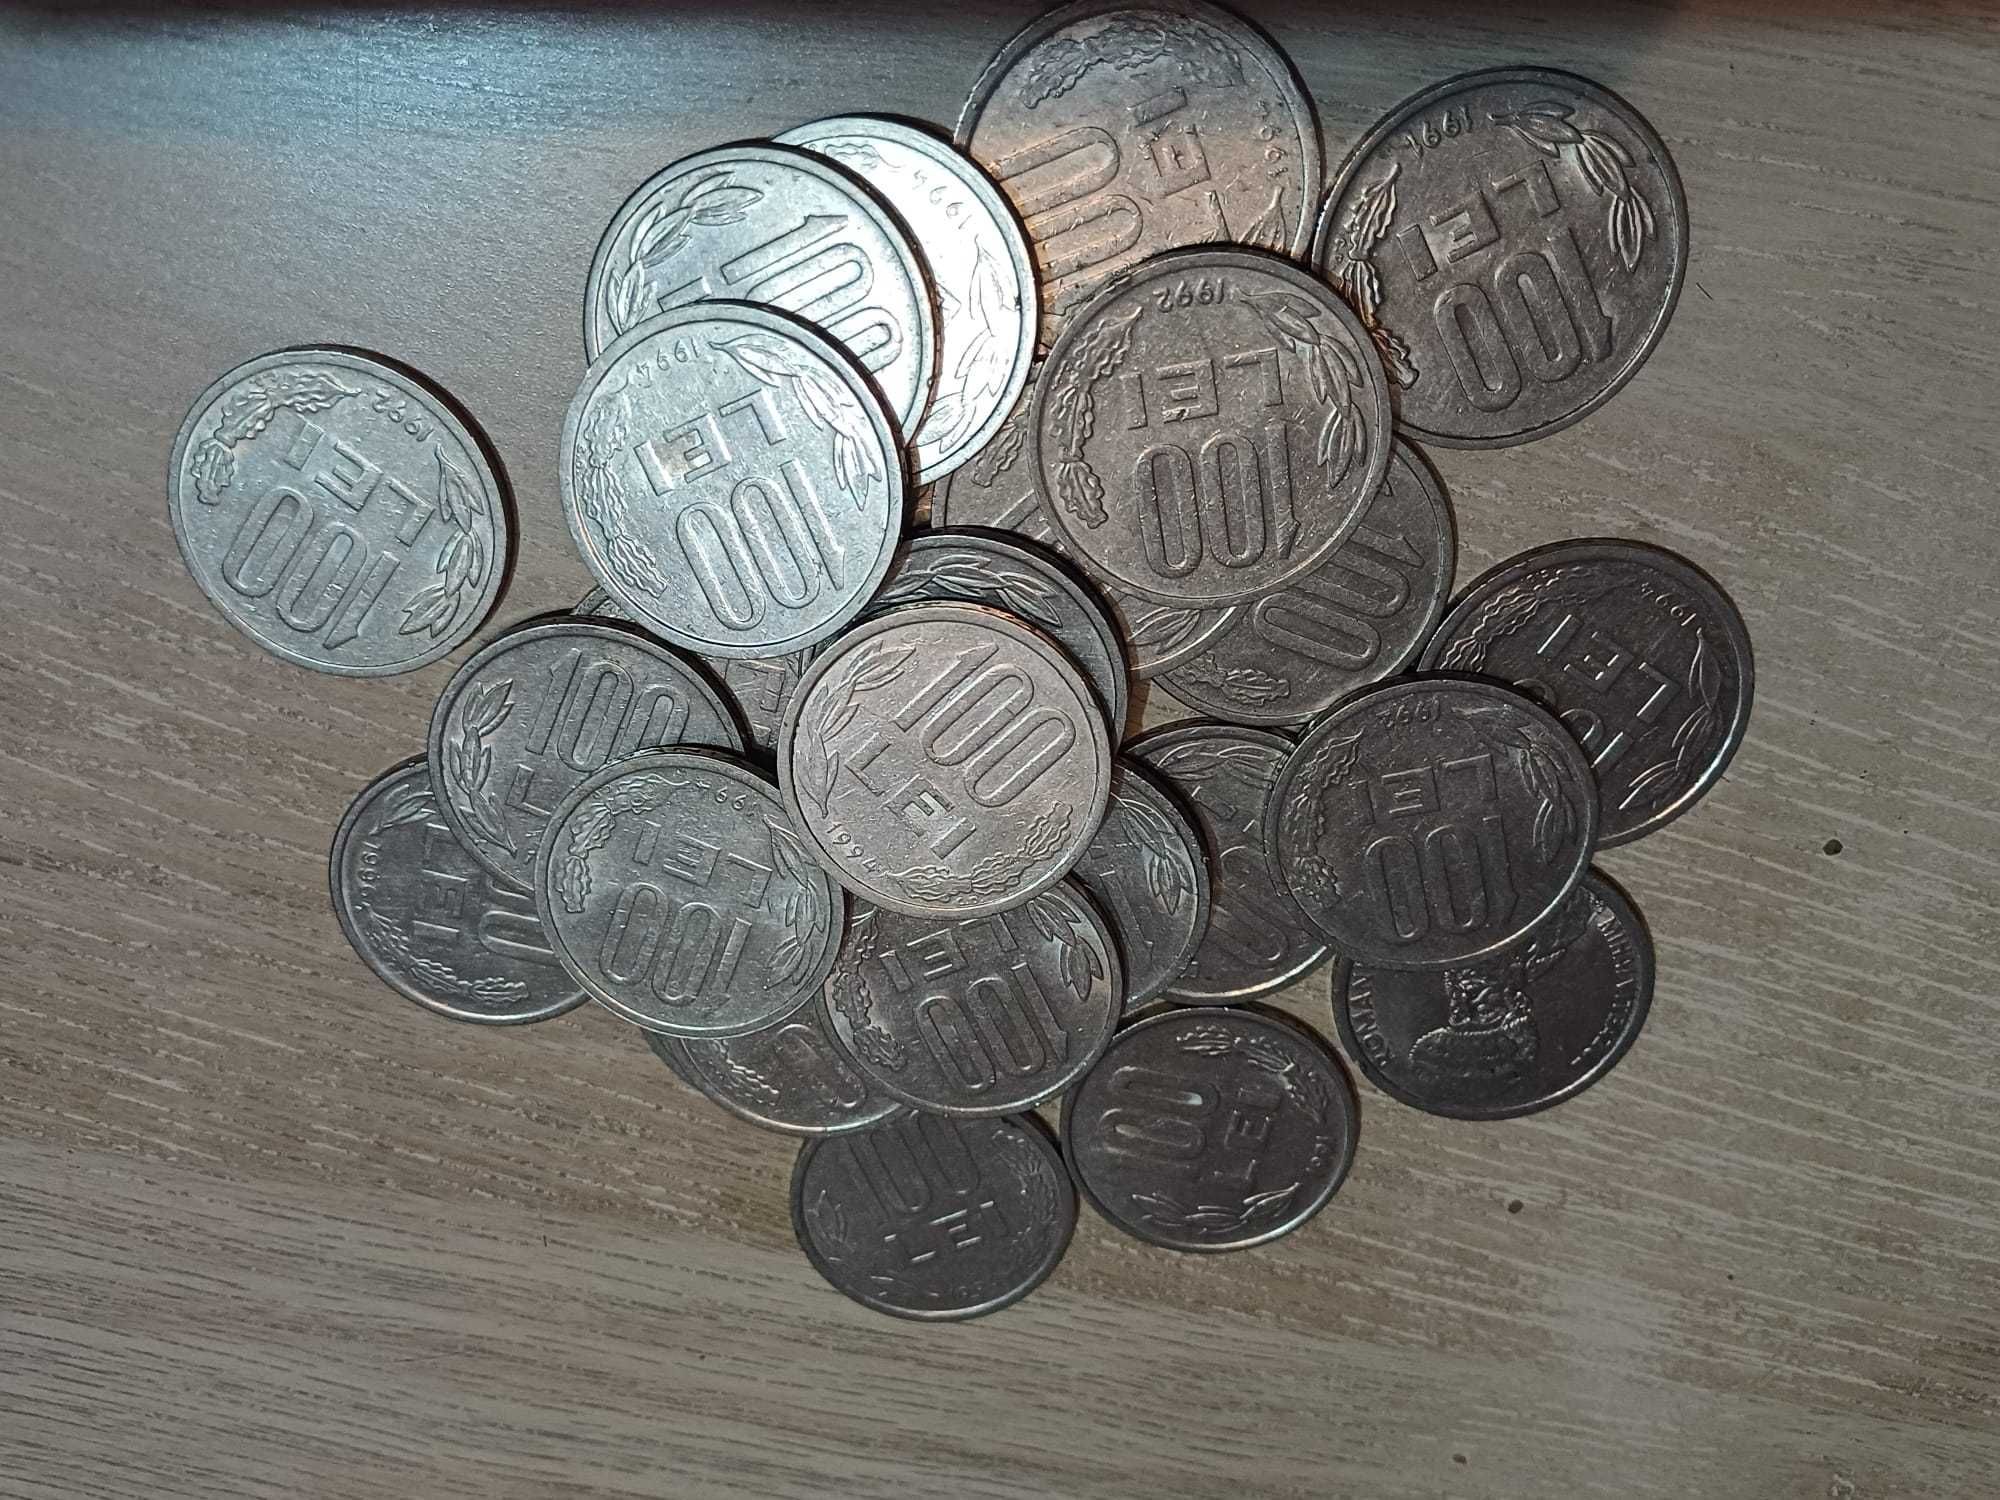 Monede vechi  500 lei, 100 lei, 10 lei, 5 lei, 3 lei, 1 leu, etc